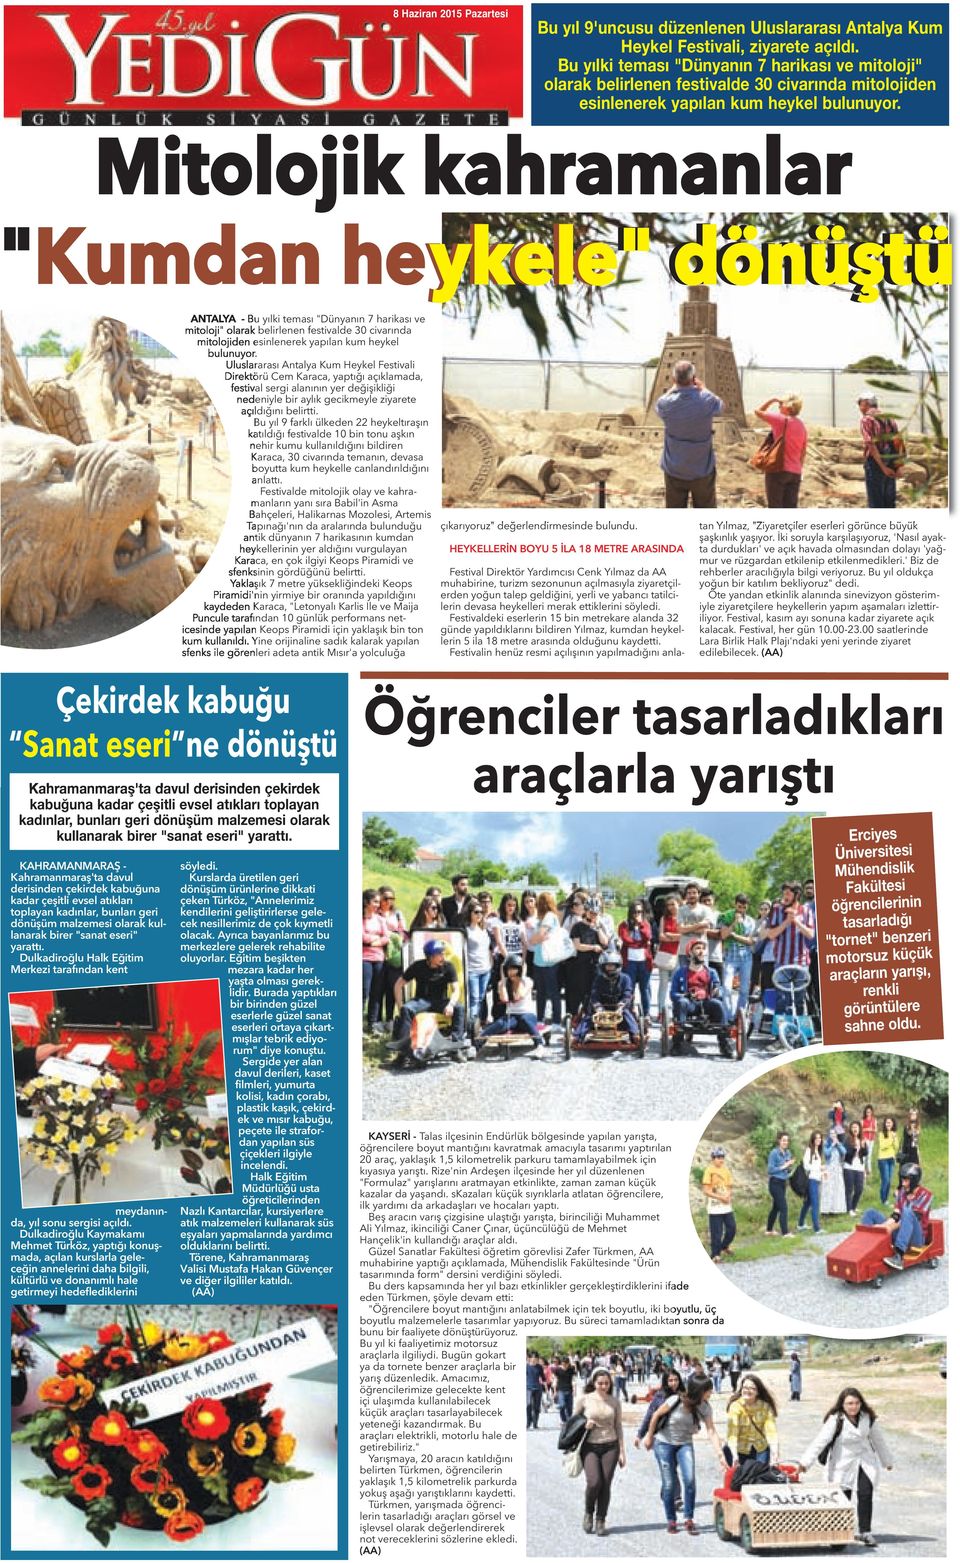 Mitolojik kahramanlar "Kumdan heykele" dönüştü ANTALYA -  Uluslararası Antalya Kum Heykel Festivali Direktörü Cem Karaca, yaptığı açıklamada, festival sergi alanının yer değişikliği nedeniyle bir